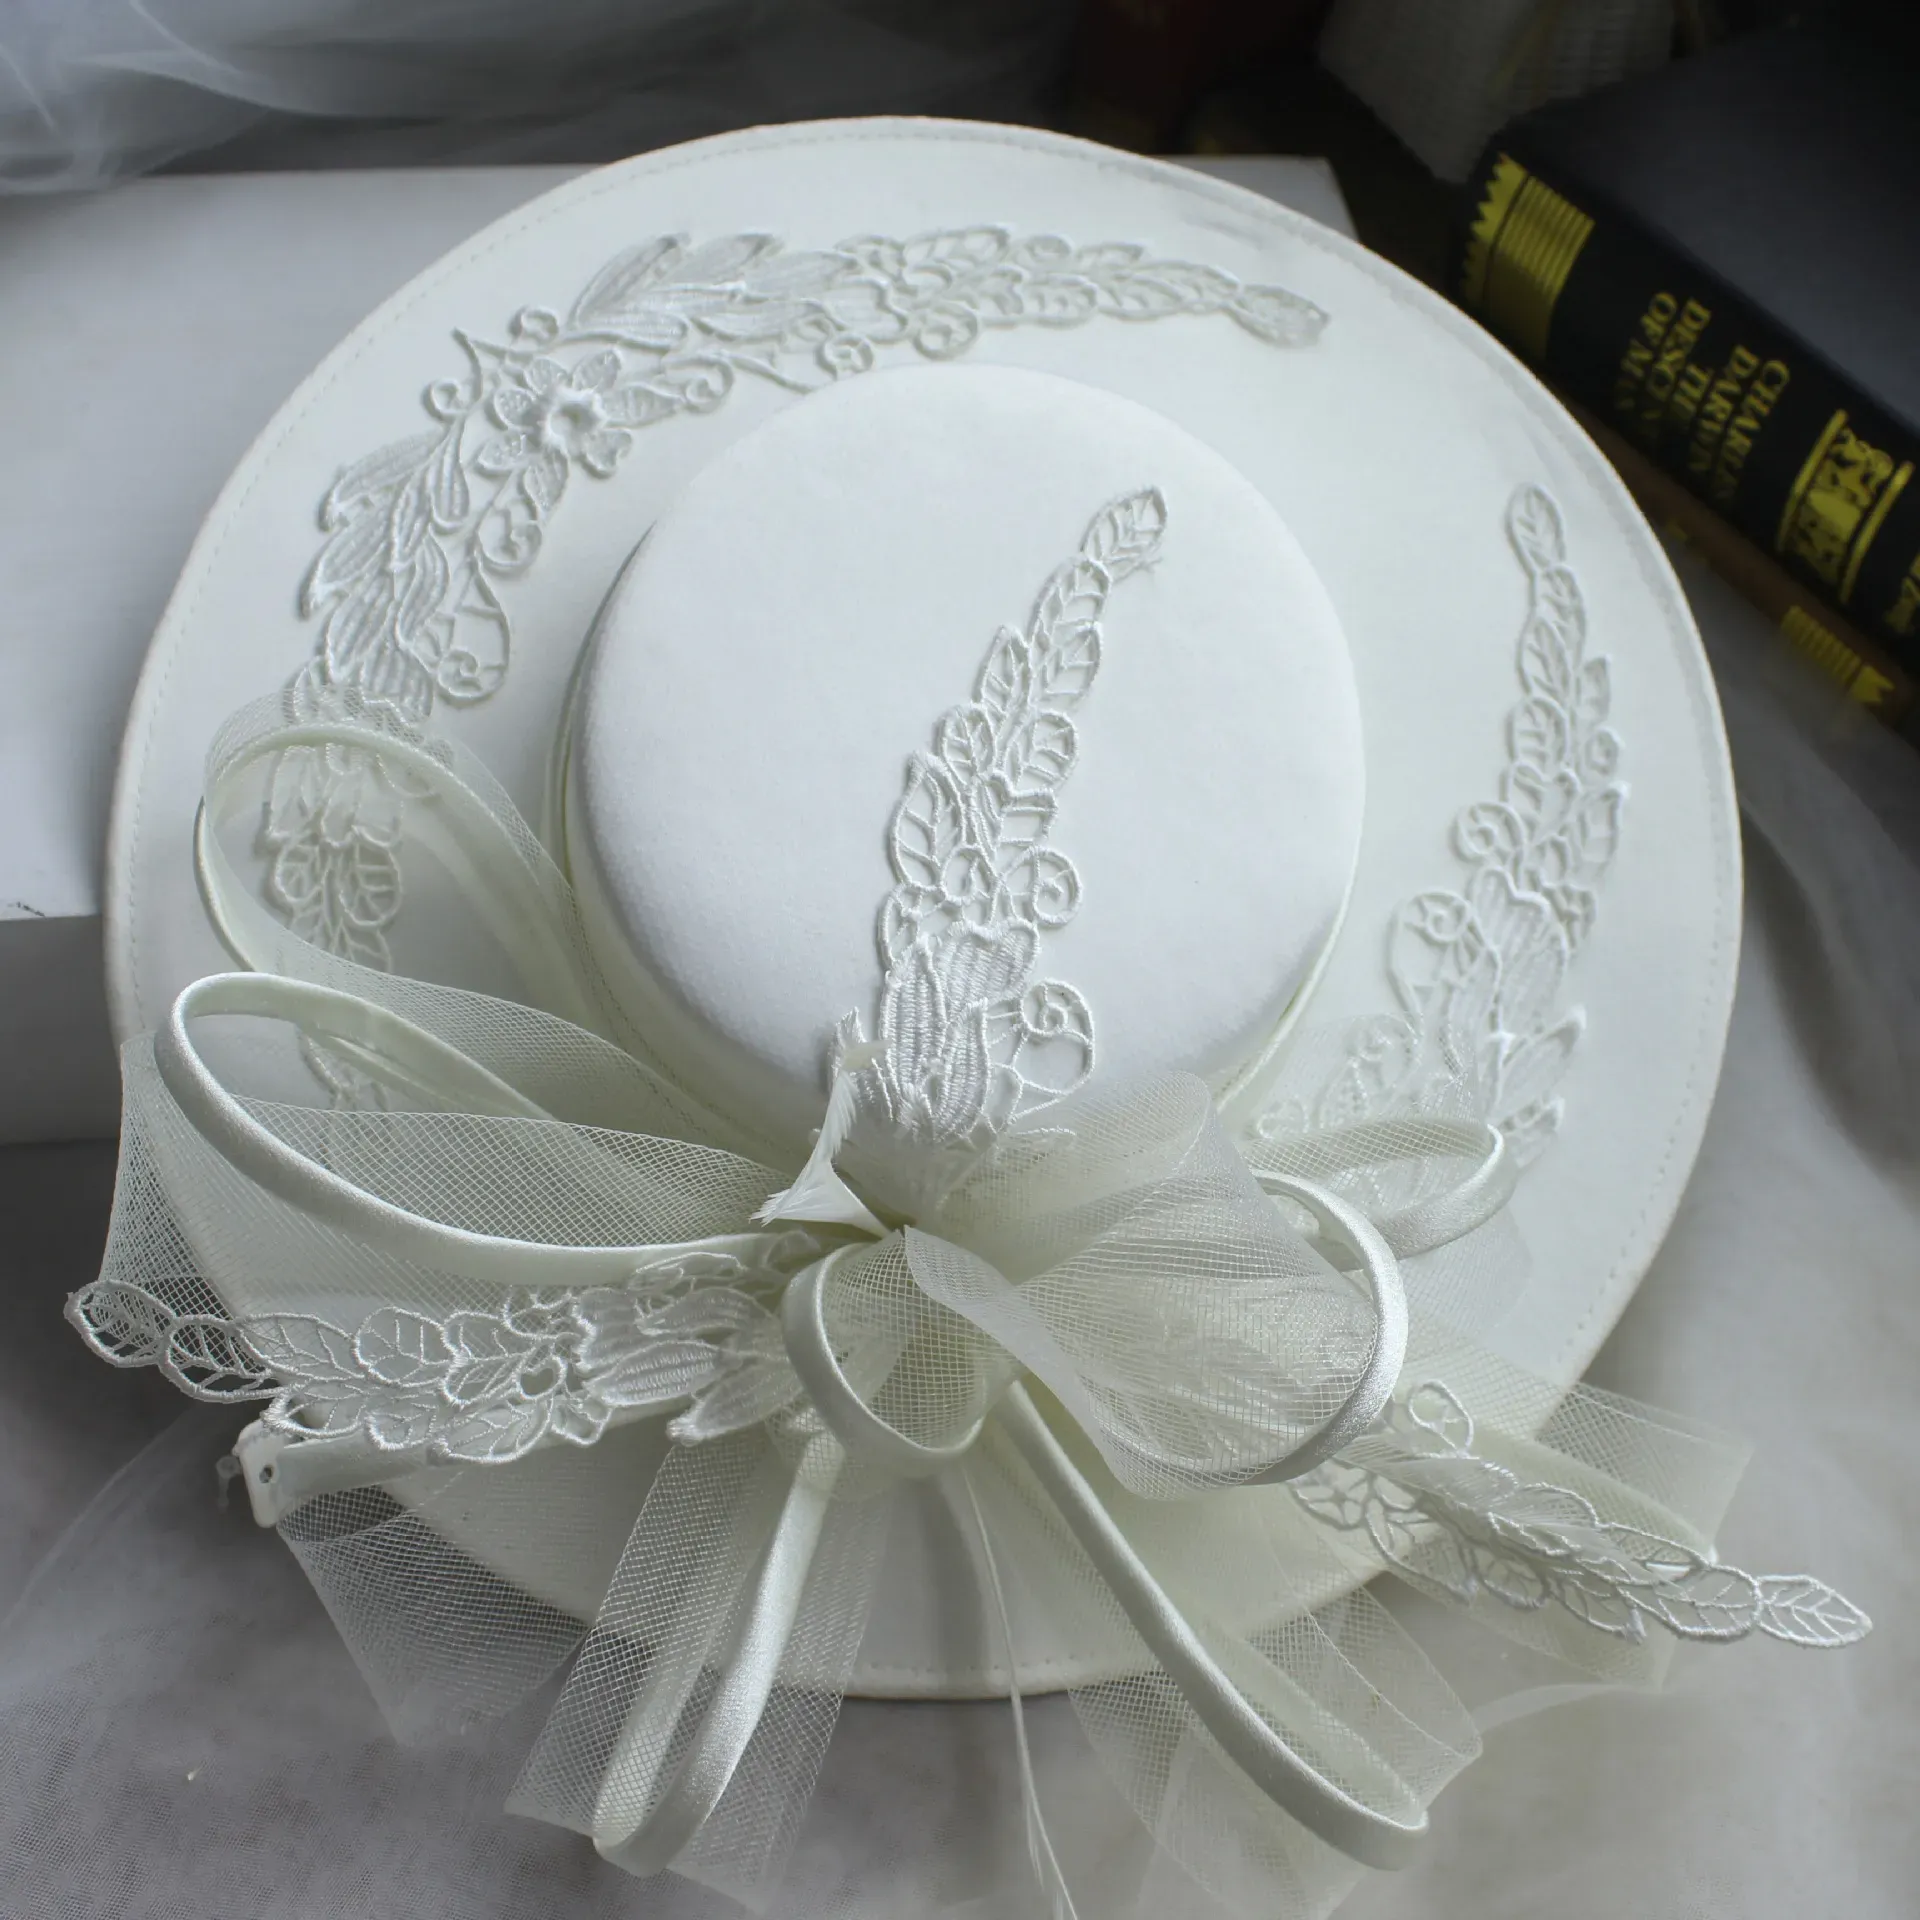 Cappelli French Bride Flat Top Big Brim Hepburn Style Hat Hat Exquisite Celebrity in stile Celebrity White White Fashion Accessori per cappelli di alto livello MZ0017